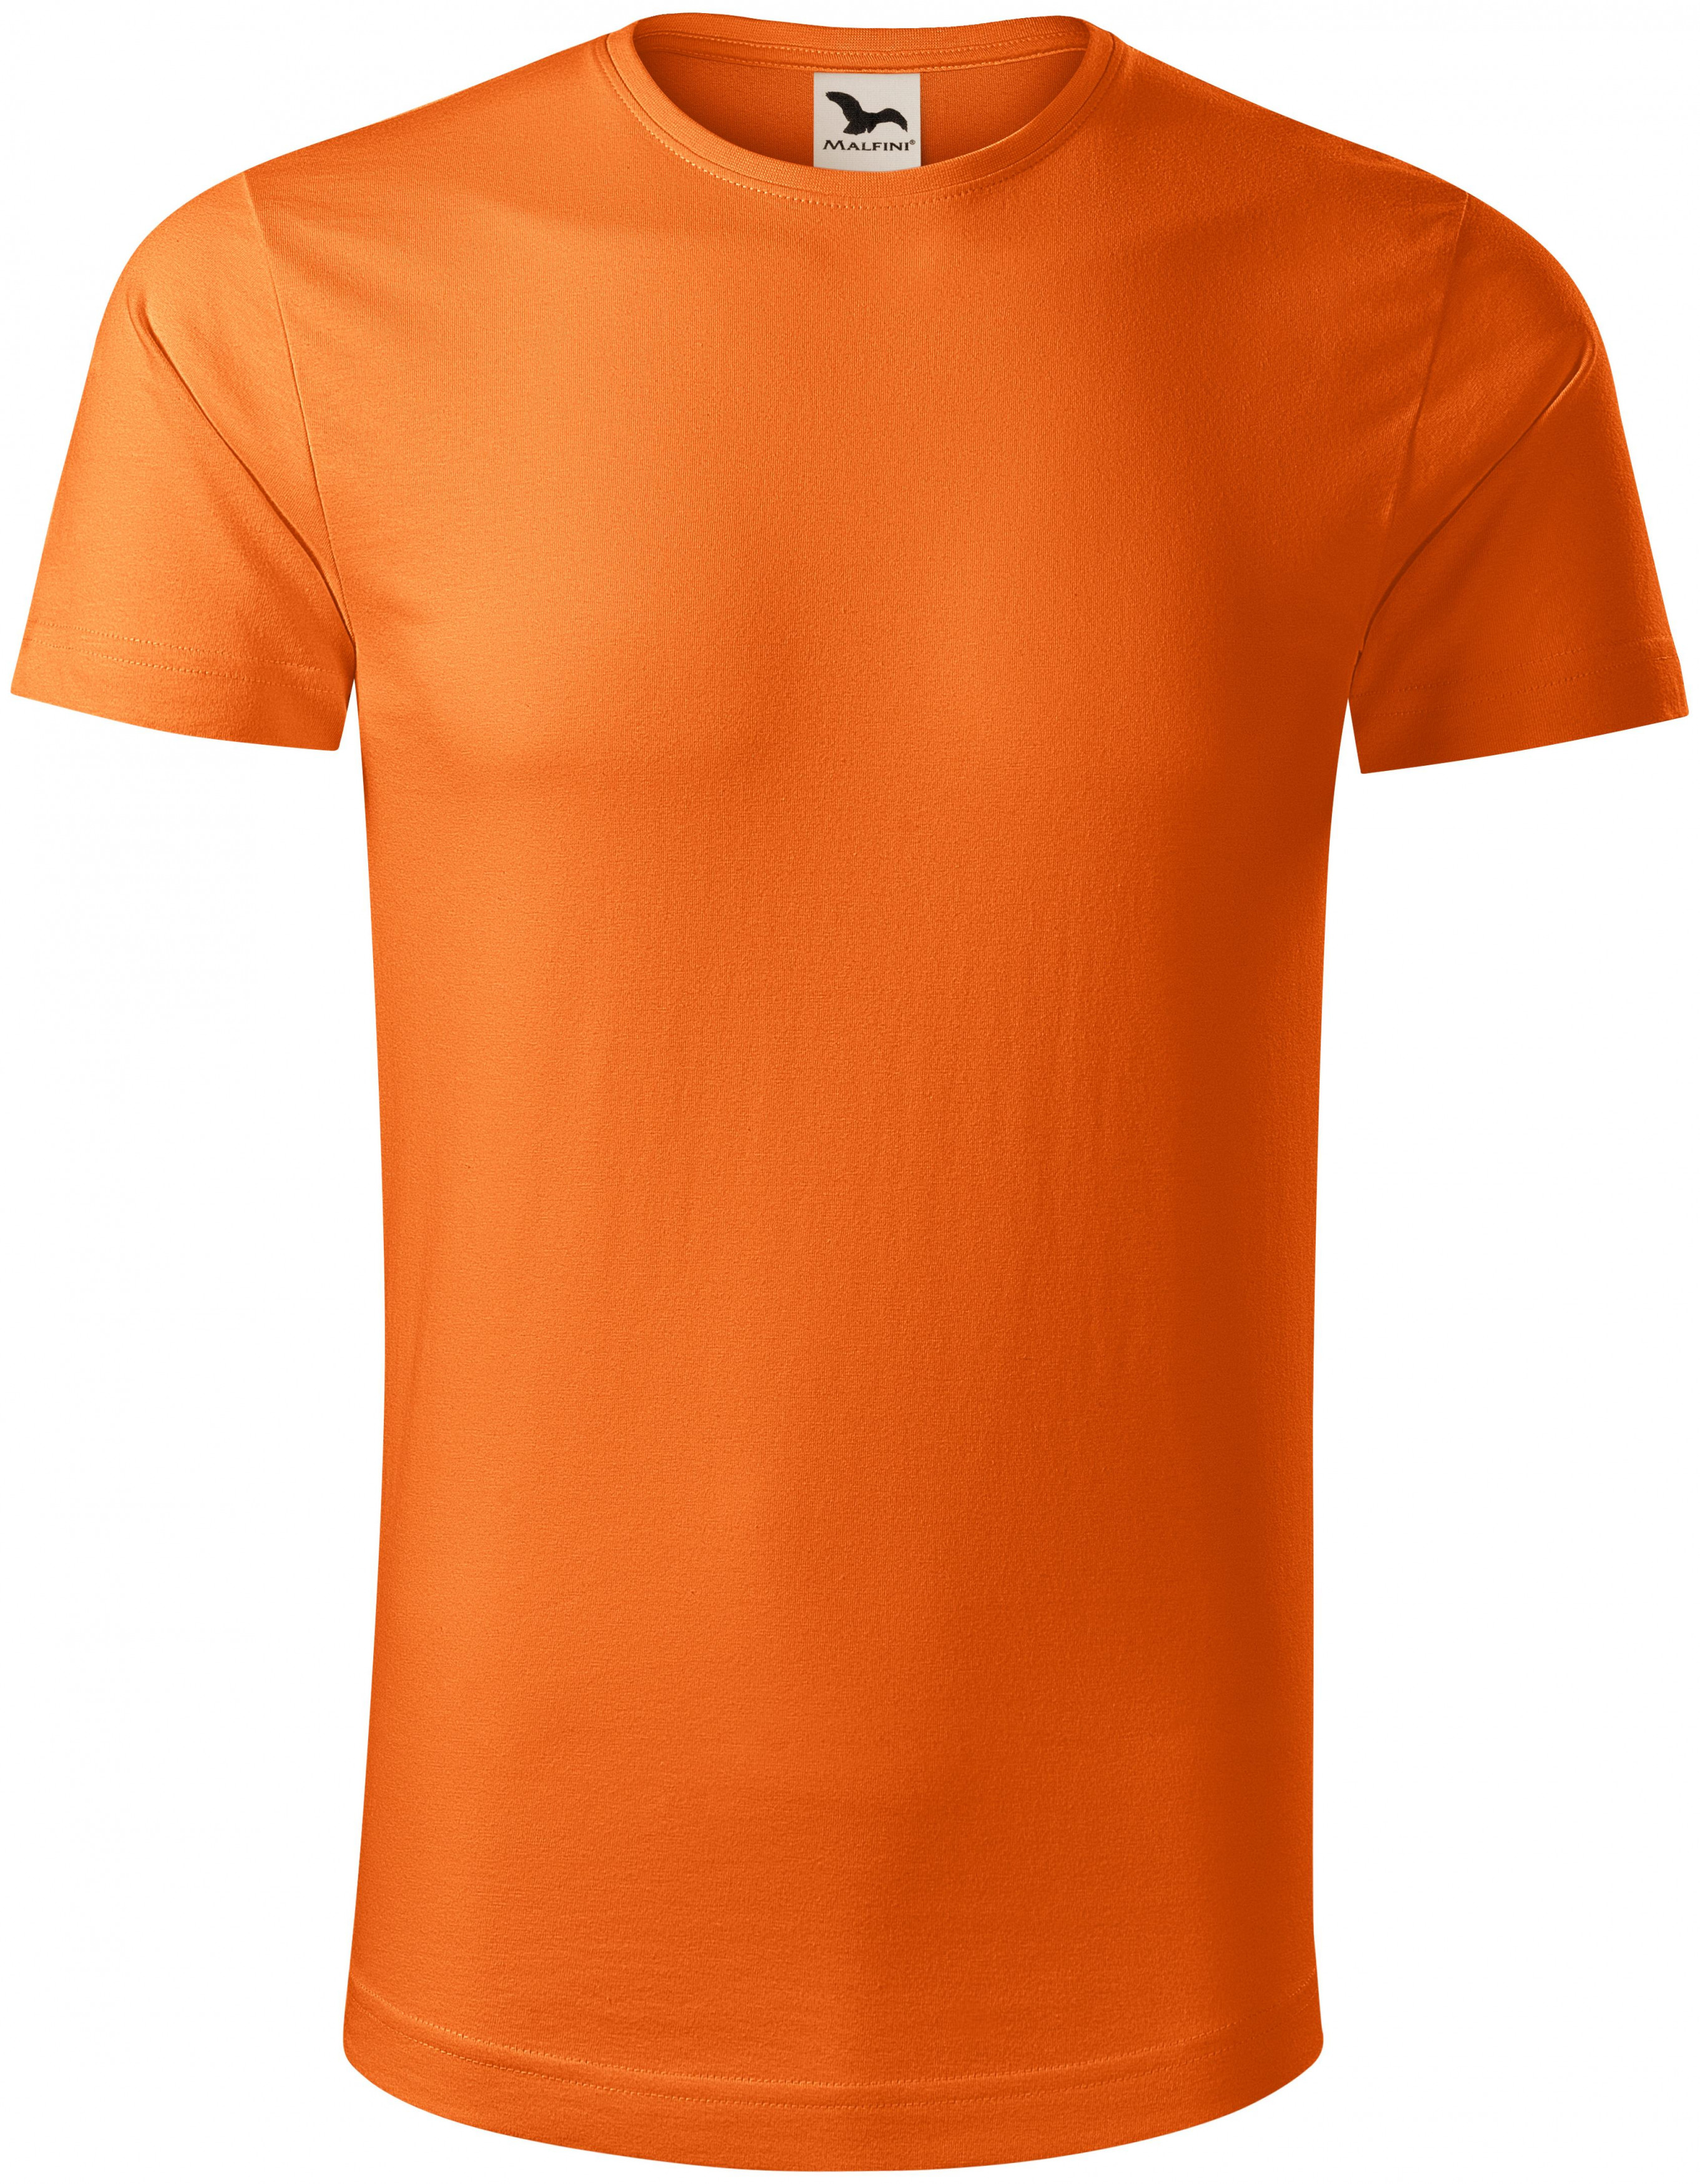 Pánske tričko, organická bavlna, oranžová, S